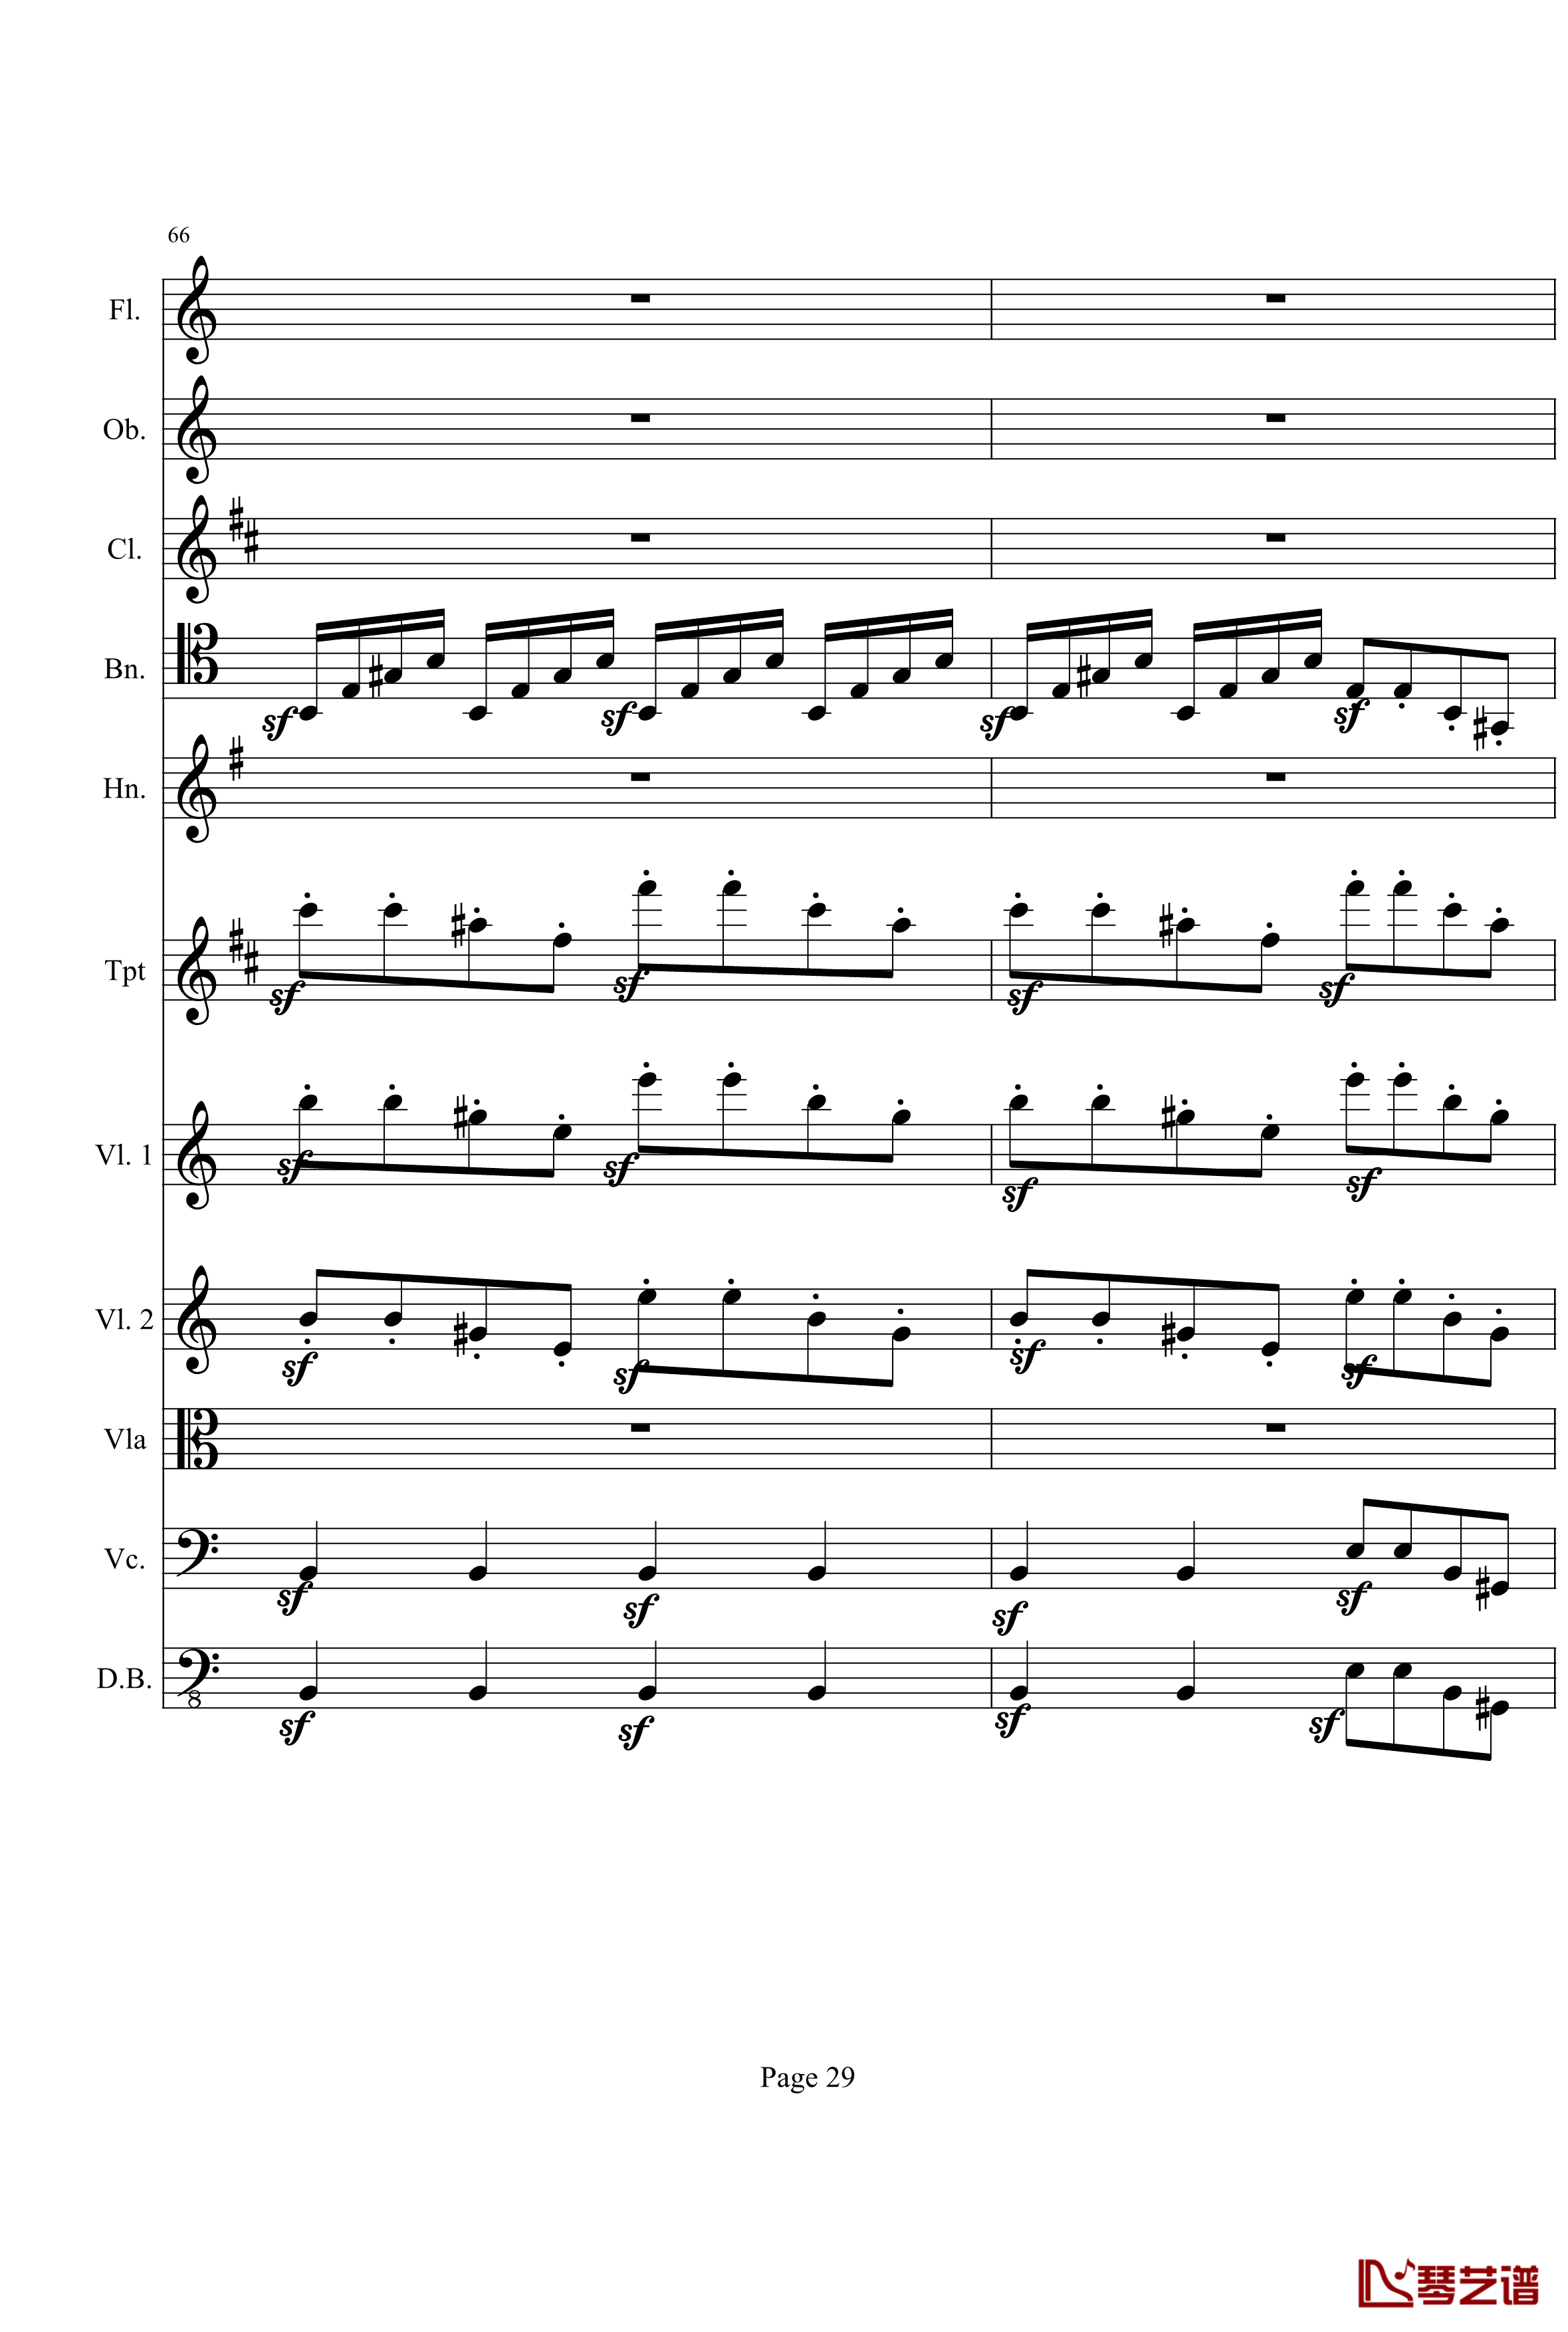 奏鸣曲之交响钢琴谱-第21-Ⅰ-贝多芬-beethoven29